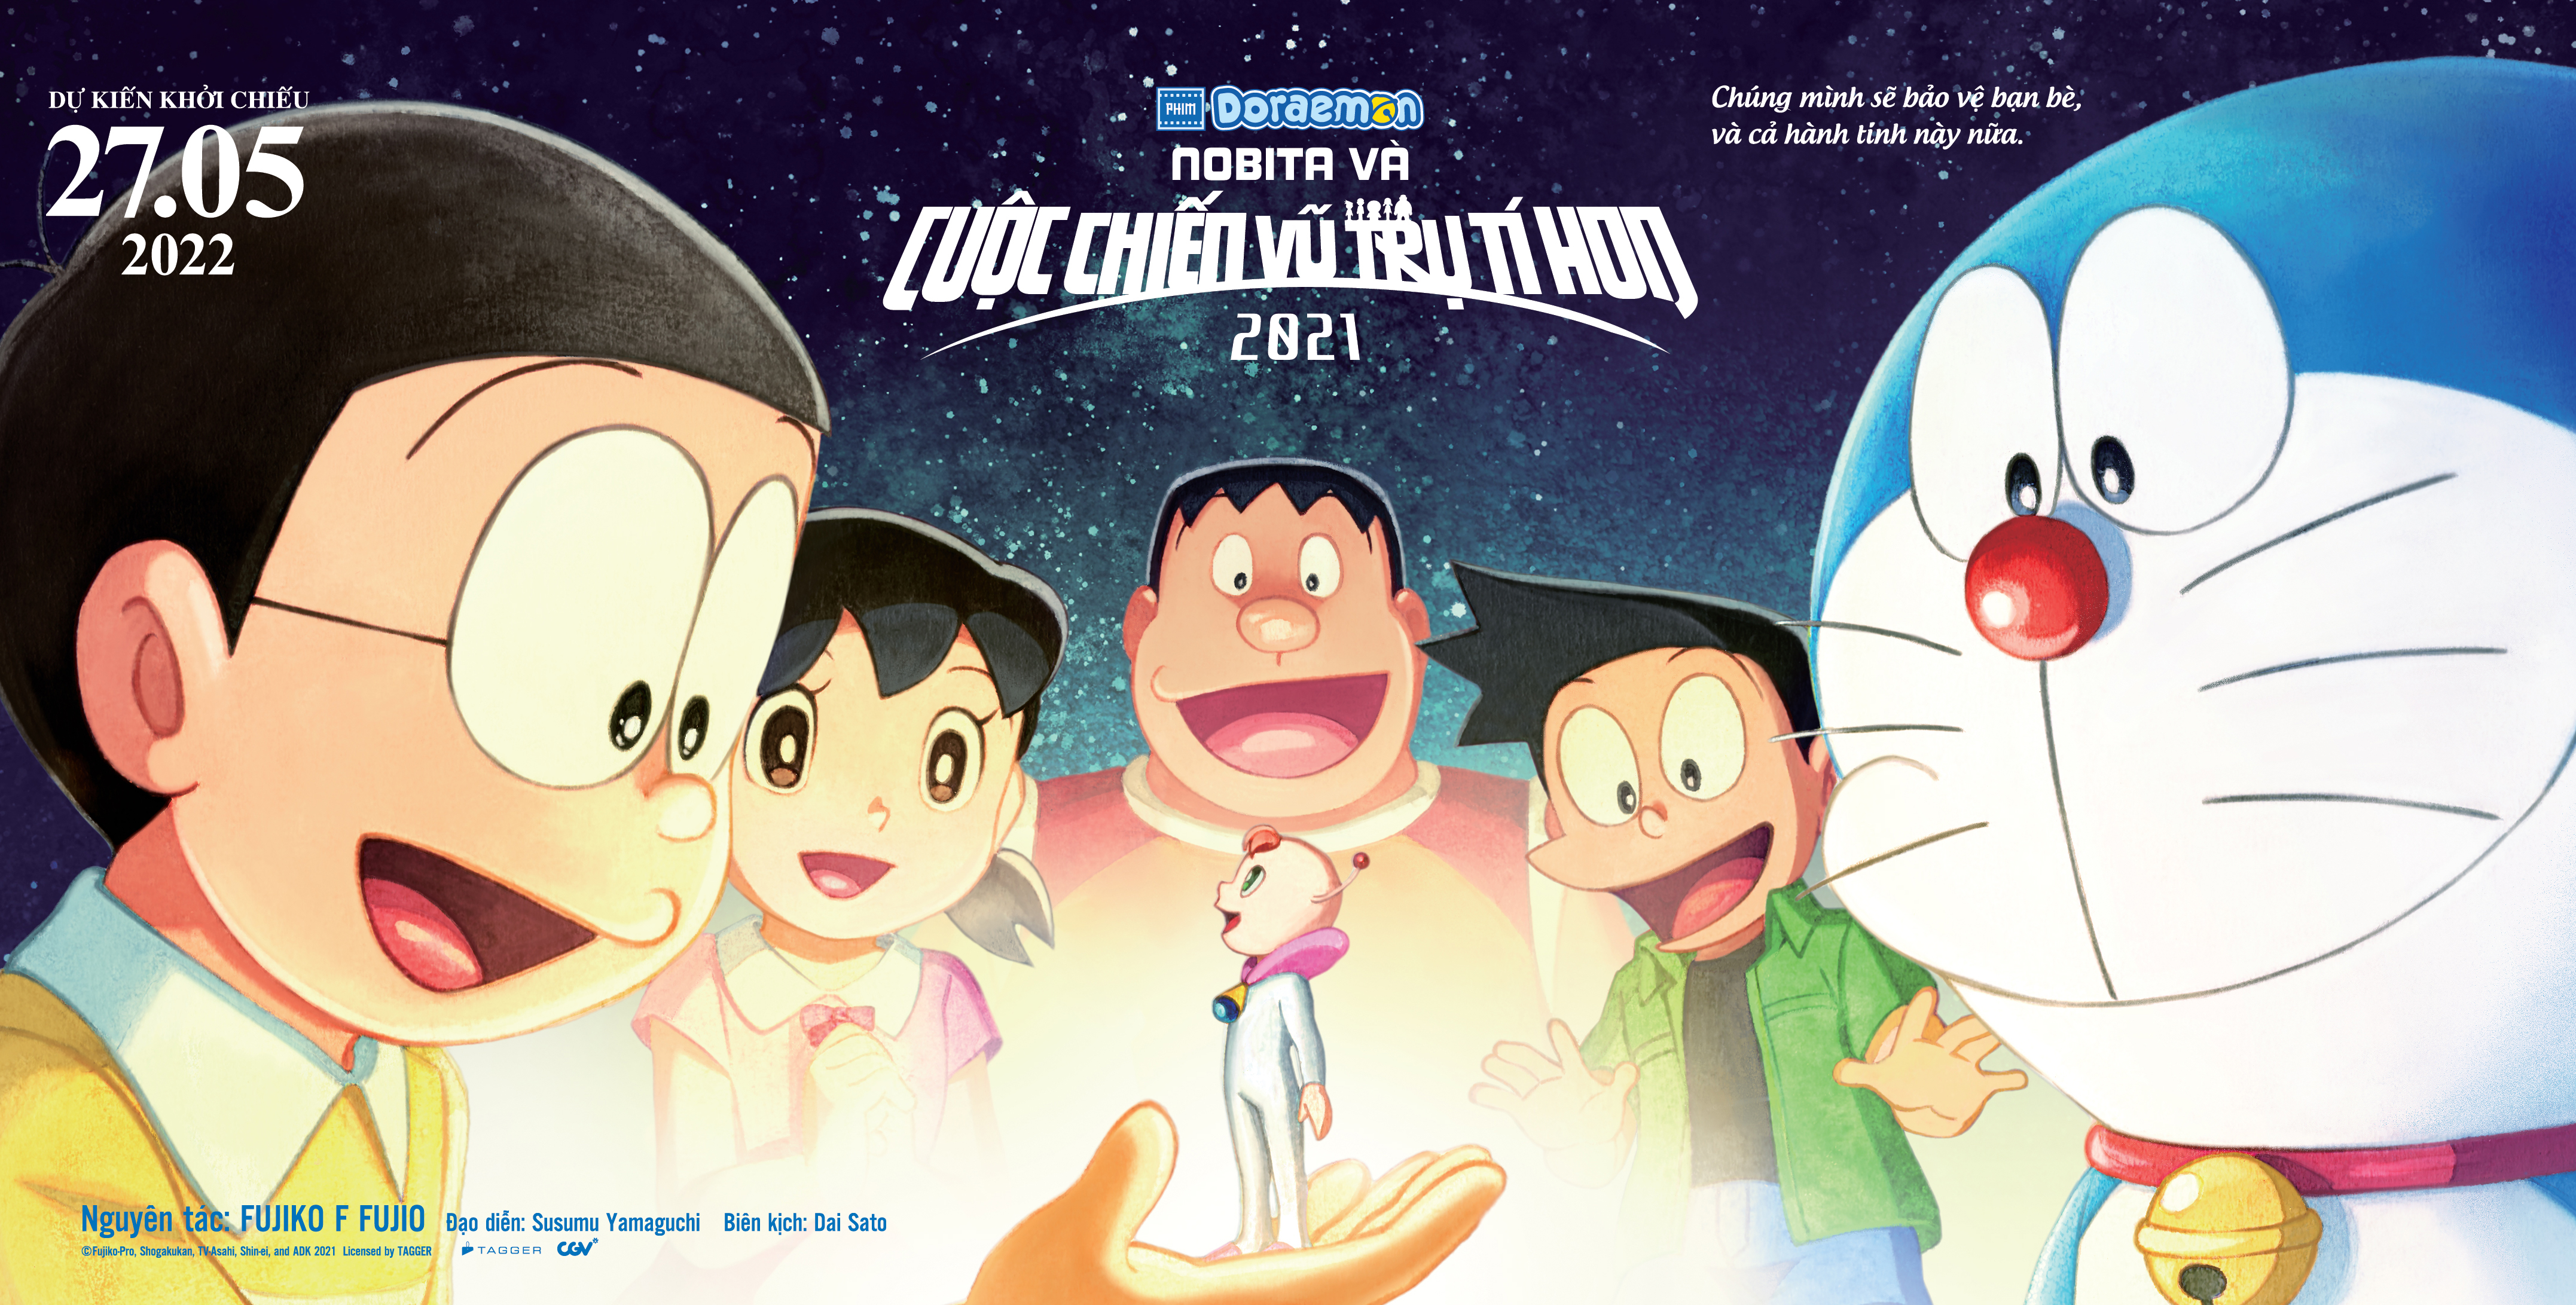 Nếu bạn là fan của Mèo máy Doraemon, hãy truy cập vào hình ảnh liên kết để xem những phim điện ảnh hay nhất về chú mèo này. Bạn sẽ được trải nghiệm những chuyến phiêu lưu tuyệt vời và câu chuyện cảm động về tình bạn giữa Doreamon và cậu bé Nobita.